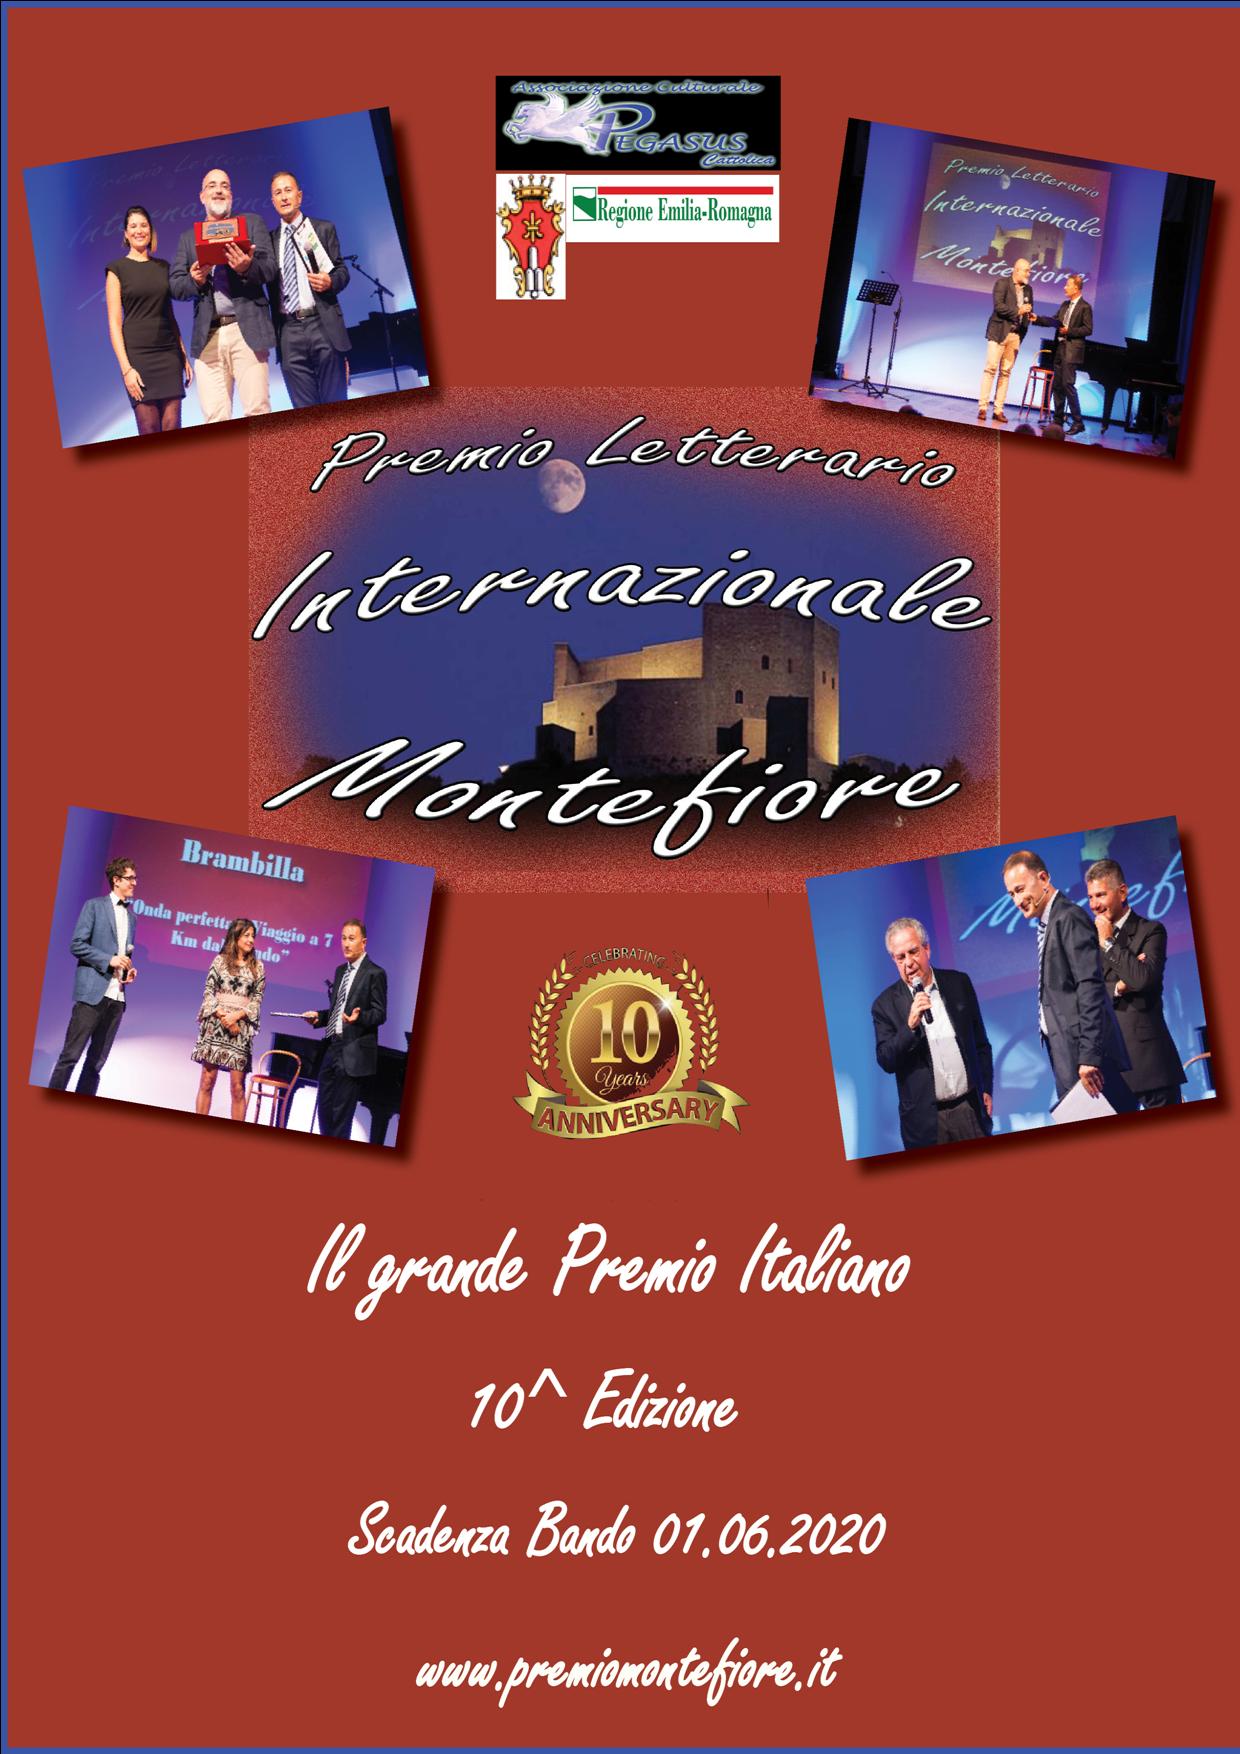 Premio Letterario Internazionale Montefiore 2020